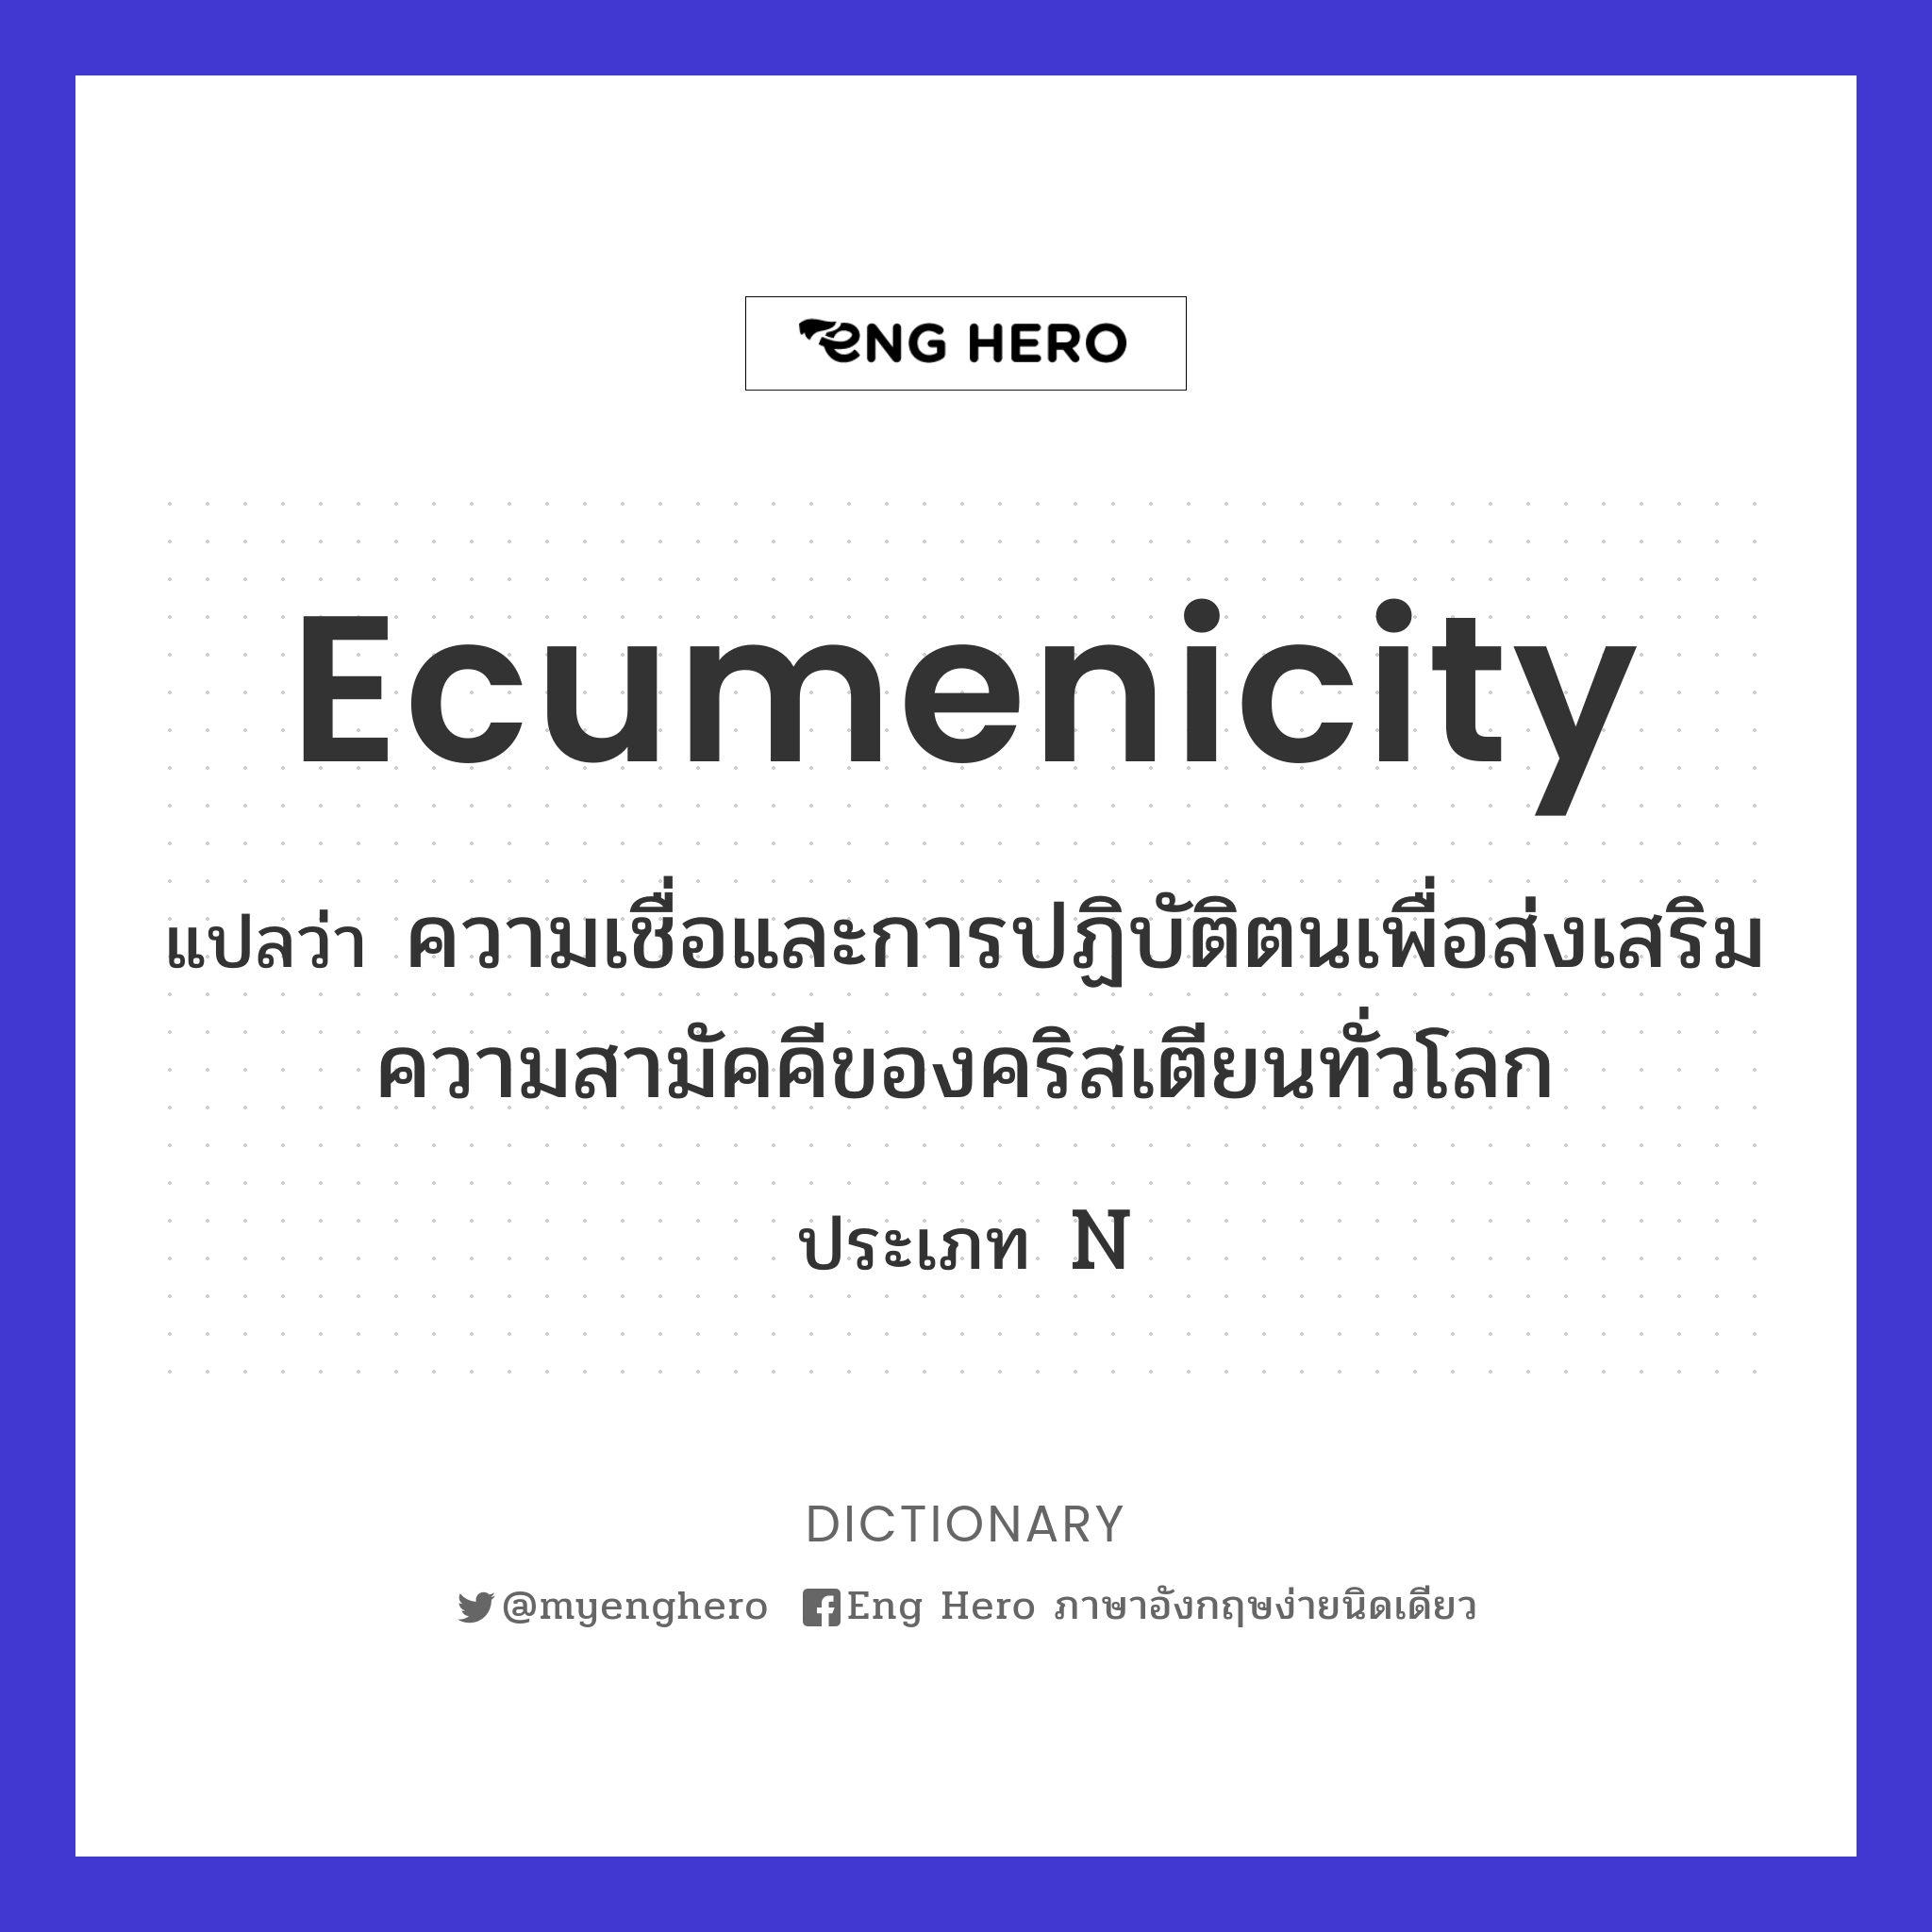 ecumenicity